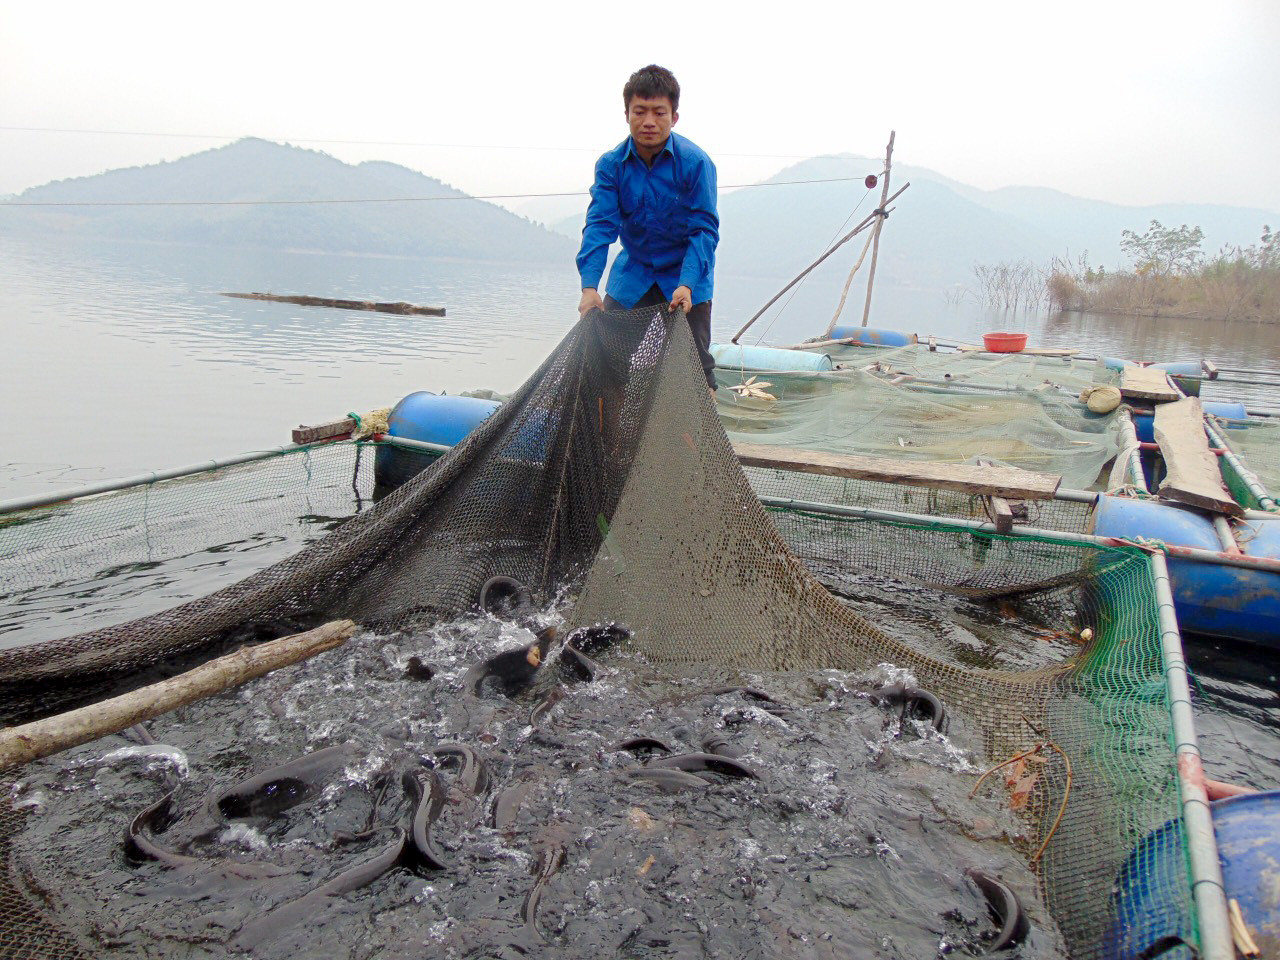 Sau 1 năm thả nuôi, người dân đã có thu nhập hàng chục triệu đồng từ cá lồng. Ảnh: TĐ